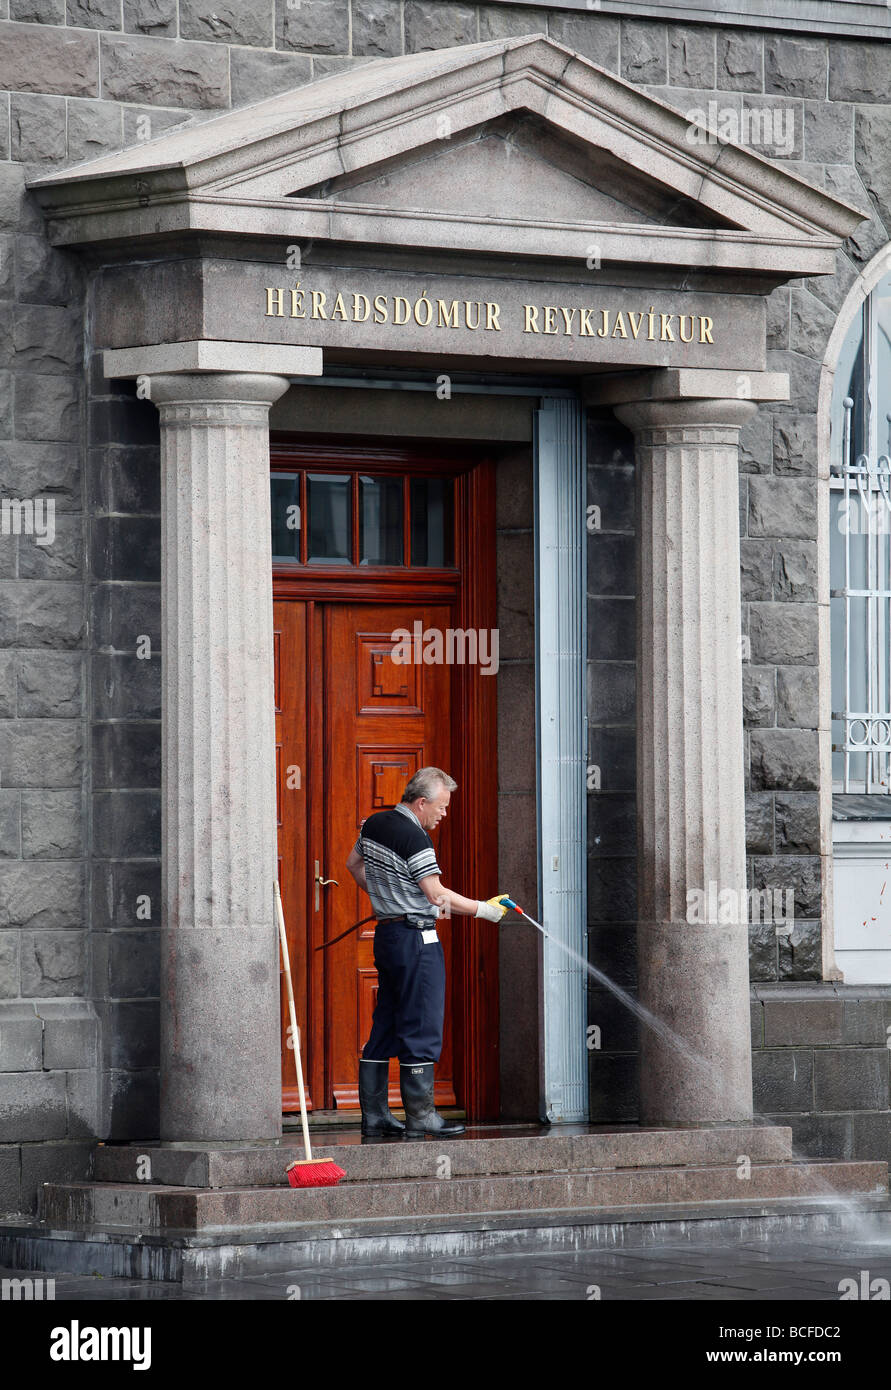 A man cleans the steps at Heradsdömur Reykjavikur, Reykjavík District Court, Reykjavík, Iceland Stock Photo